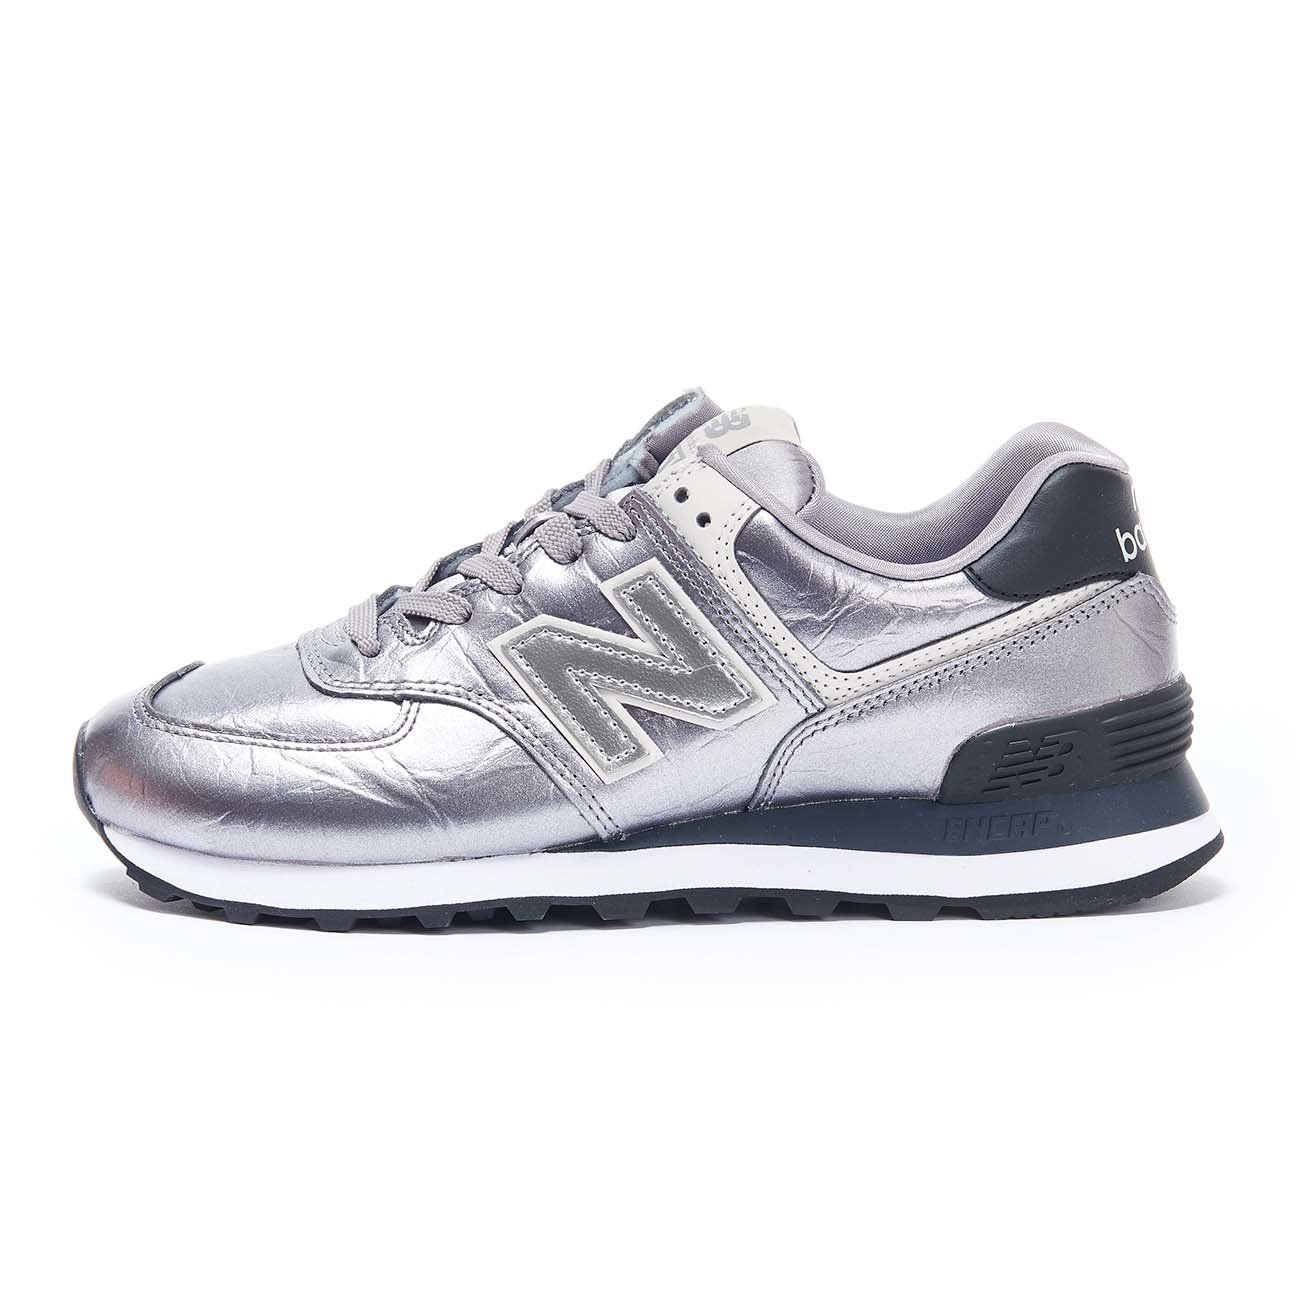 Amazon.com | New Balance Men's 574 V1 Leather Sneaker, White/Gum, 9 D US |  Road Running